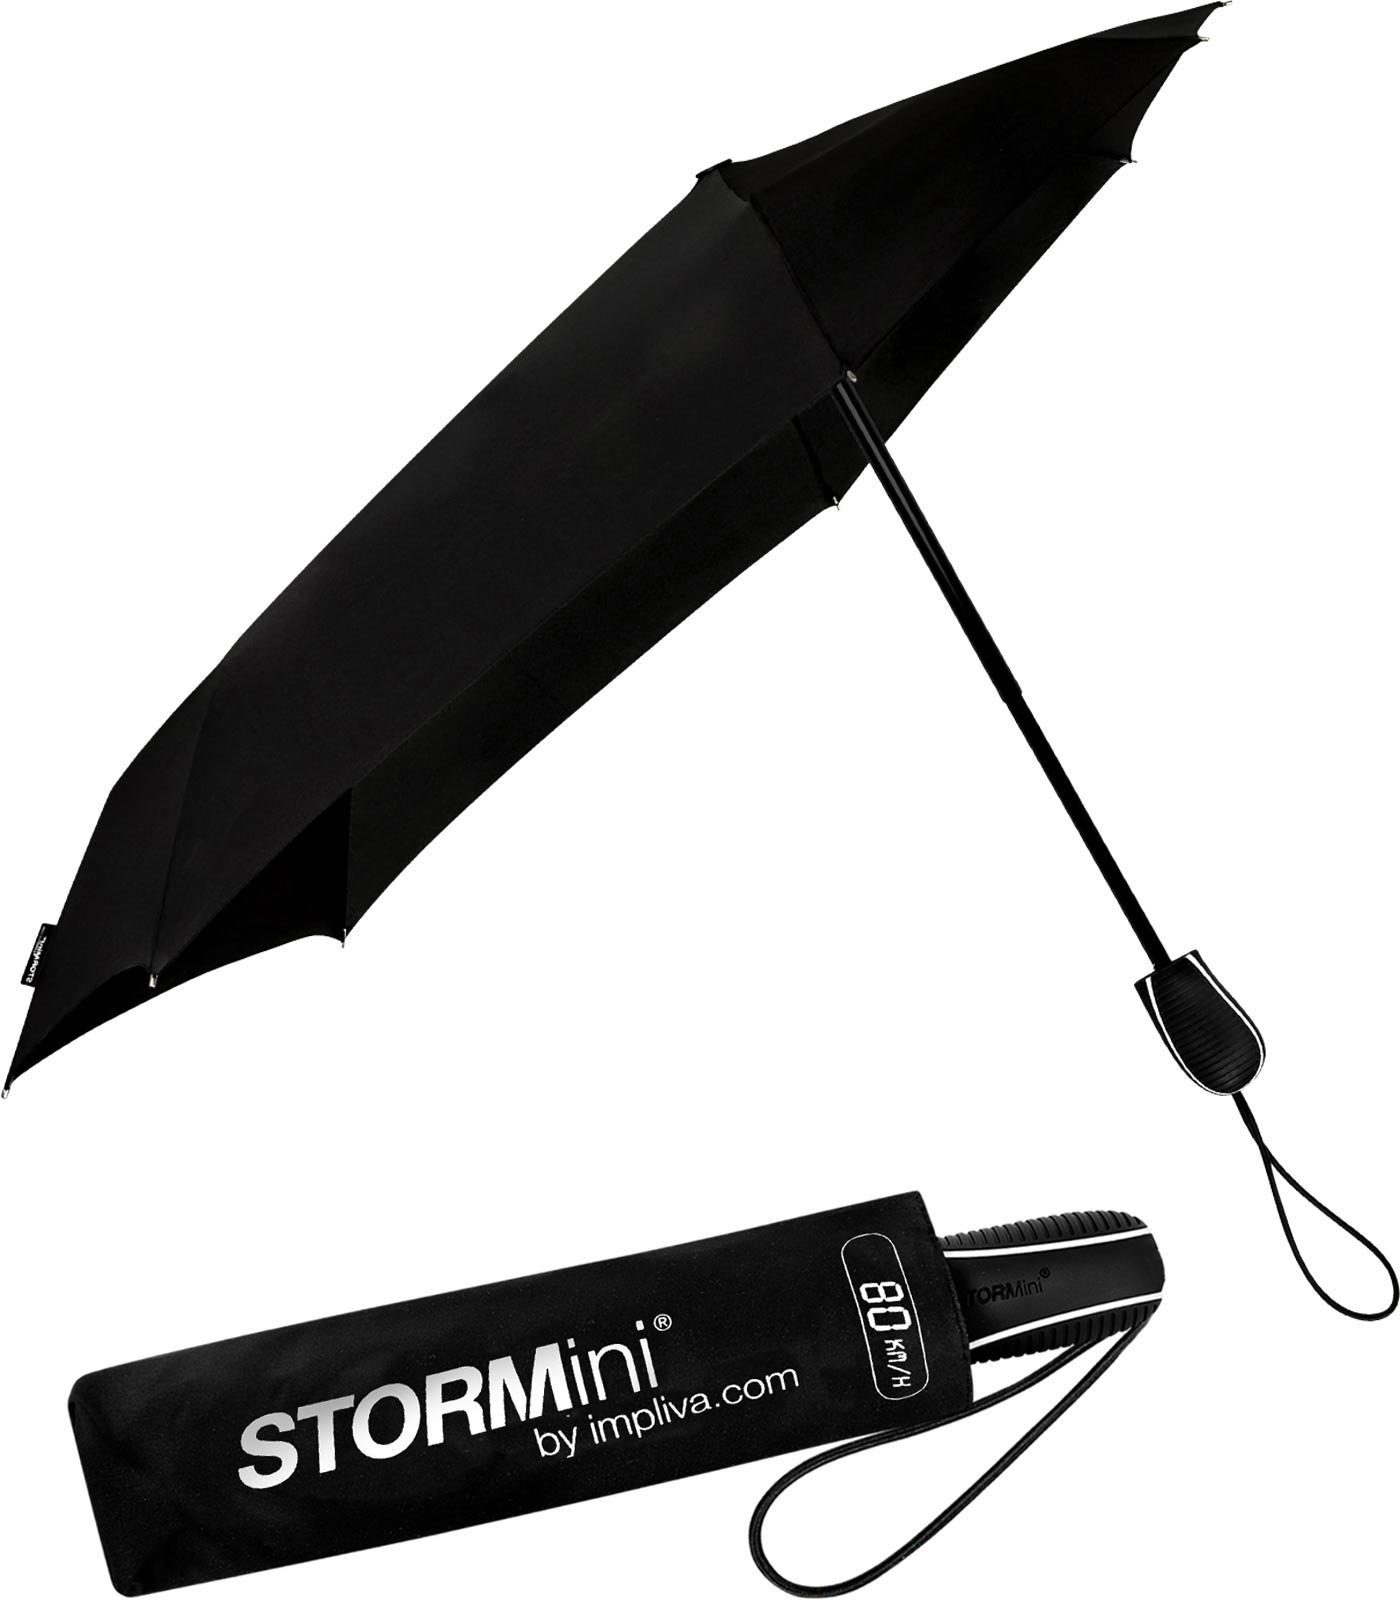 Wind, zu aerodynamischer 80 schwarz besondere seine in km/h Form durch hält Schirm Impliva STORMini bis Sturmschirm, dreht Taschenregenschirm der sich aus den